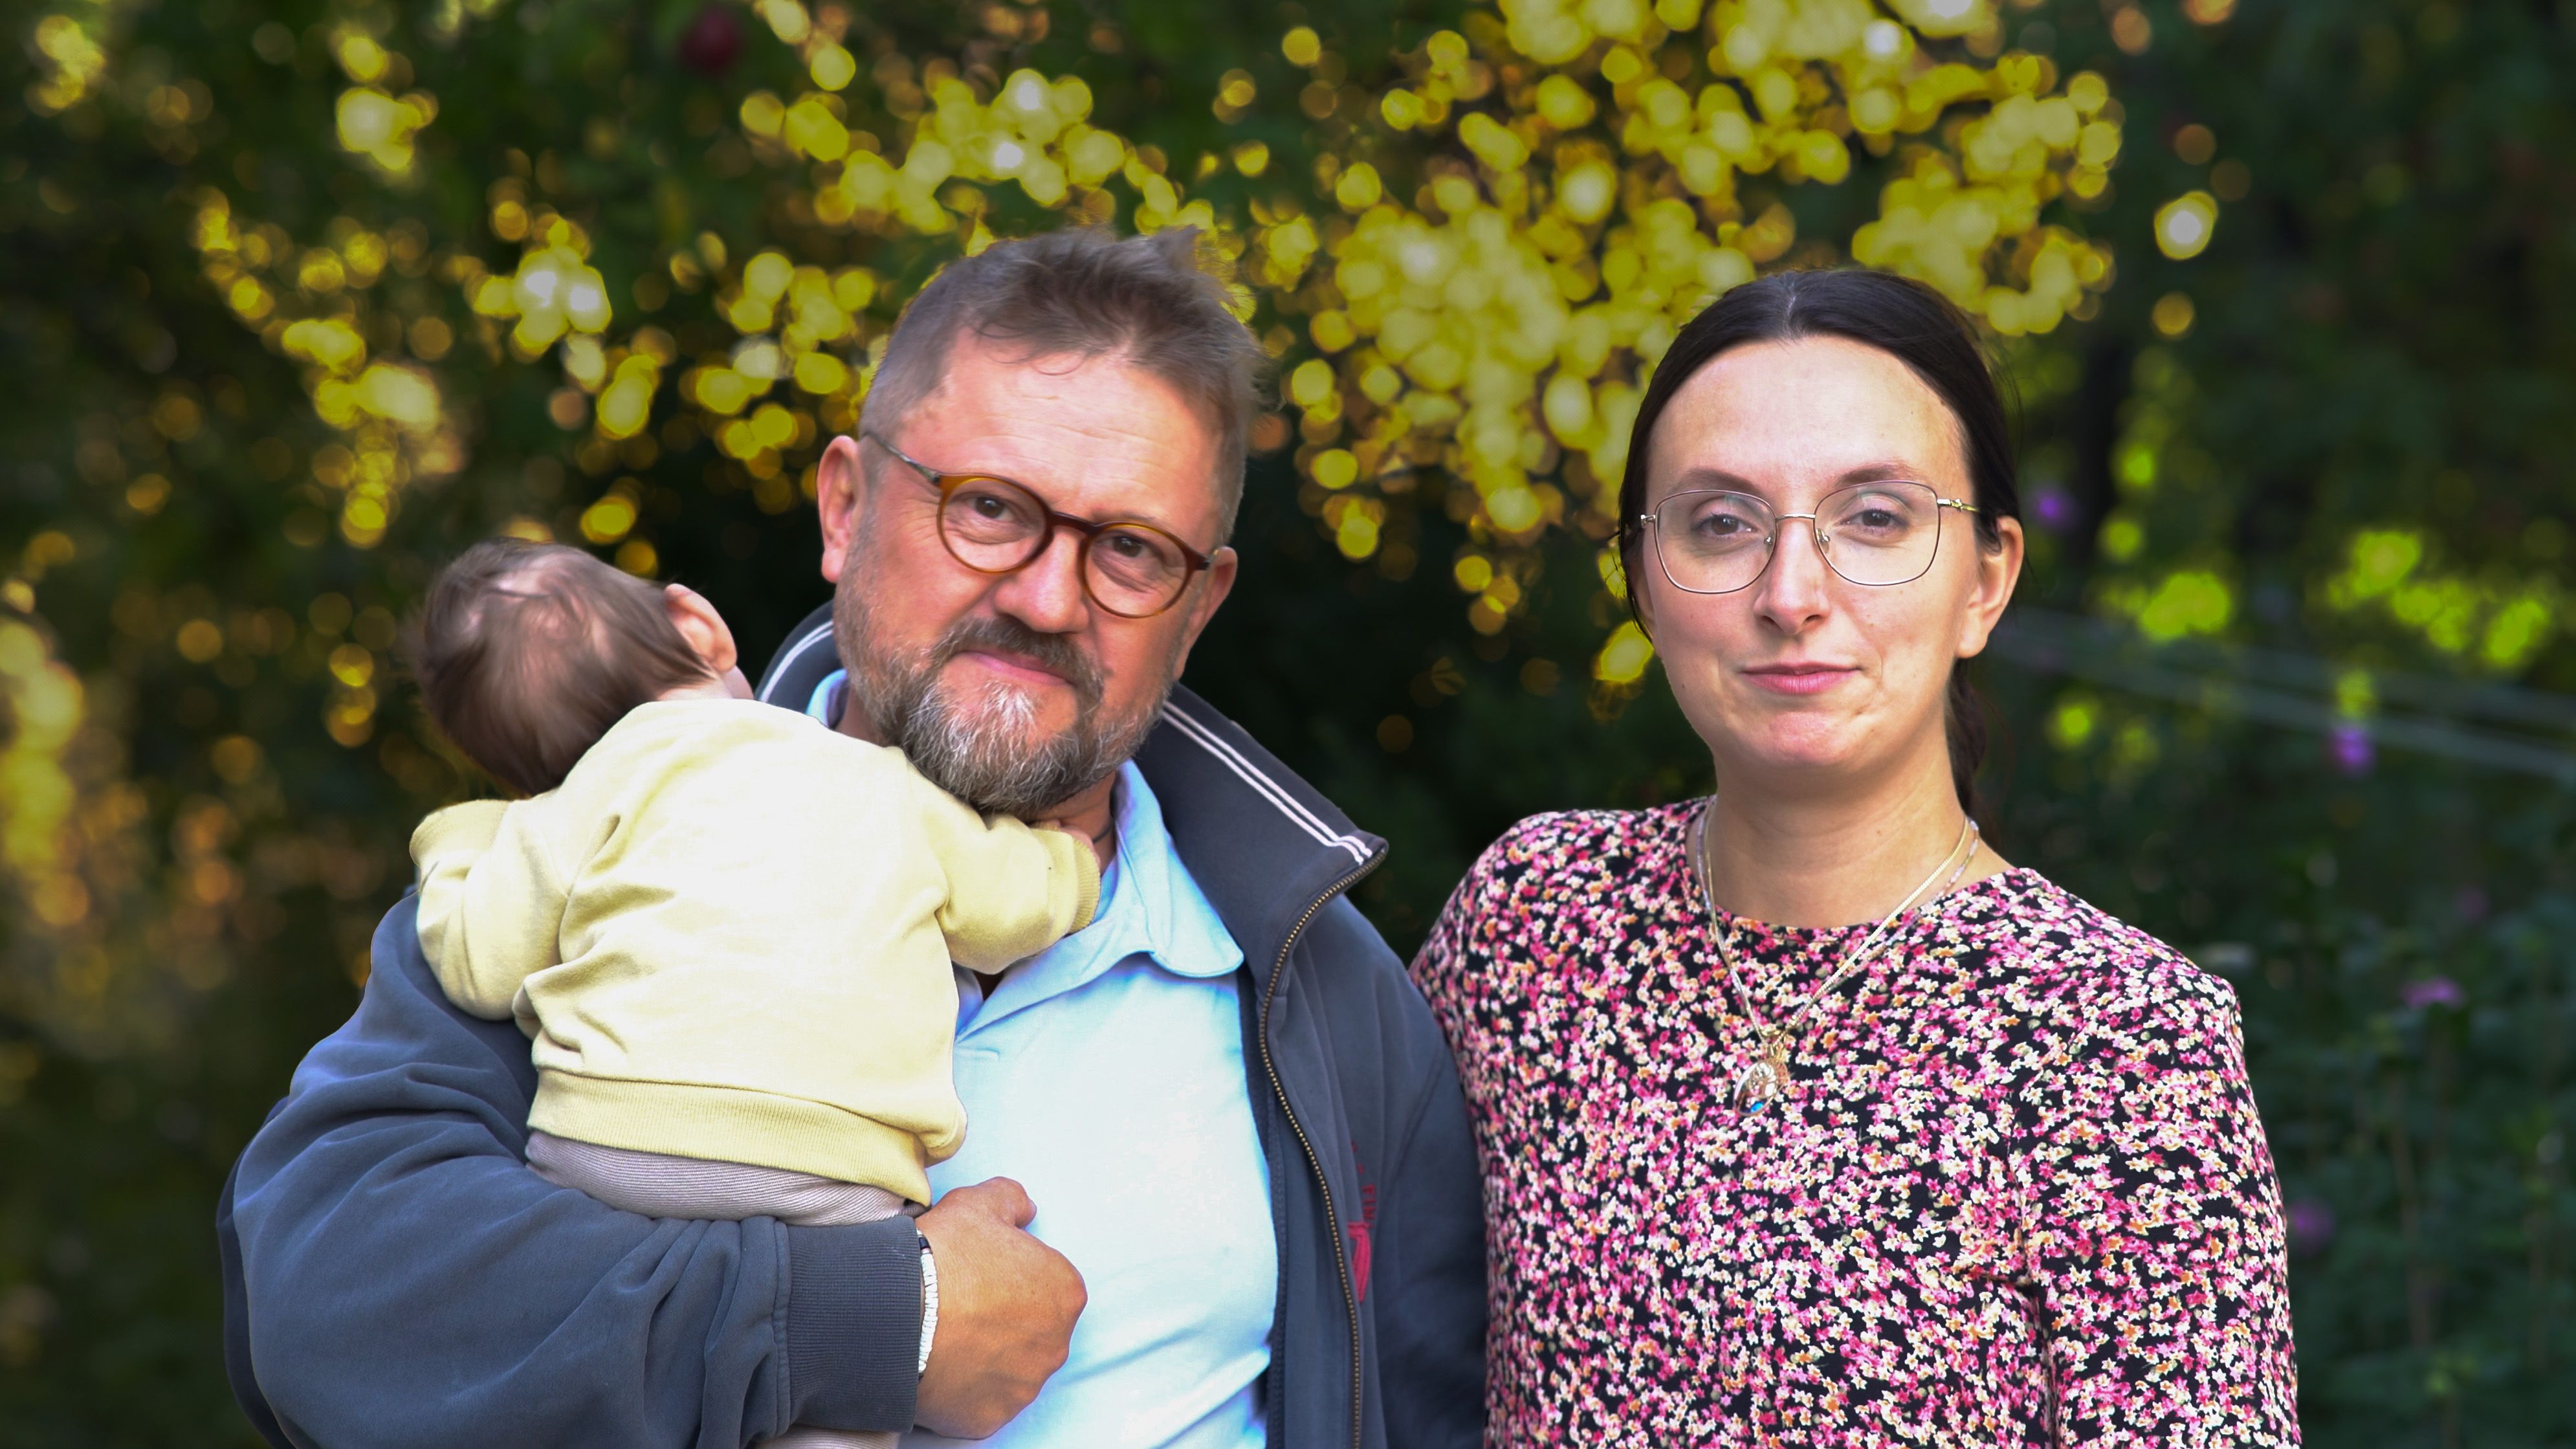 Manželé Zimovi o IVF: Přejeme si ostatní zbavit strachu a poslat jim kus naděje a podpory